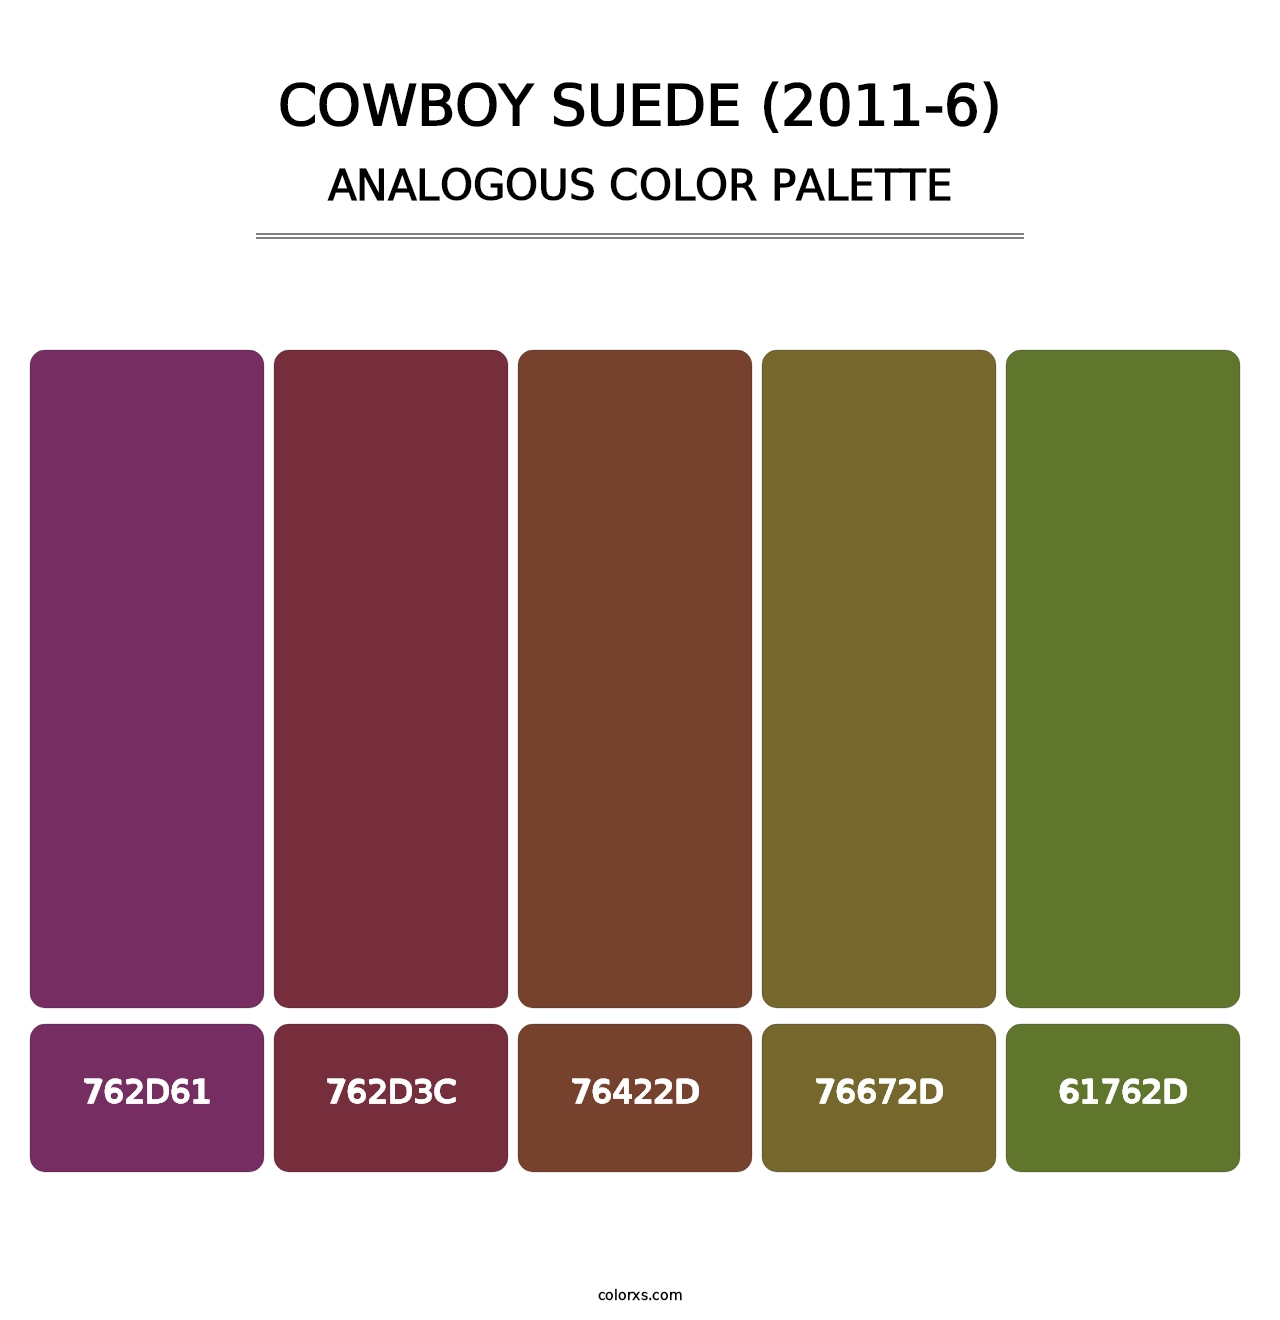 Cowboy Suede (2011-6) - Analogous Color Palette